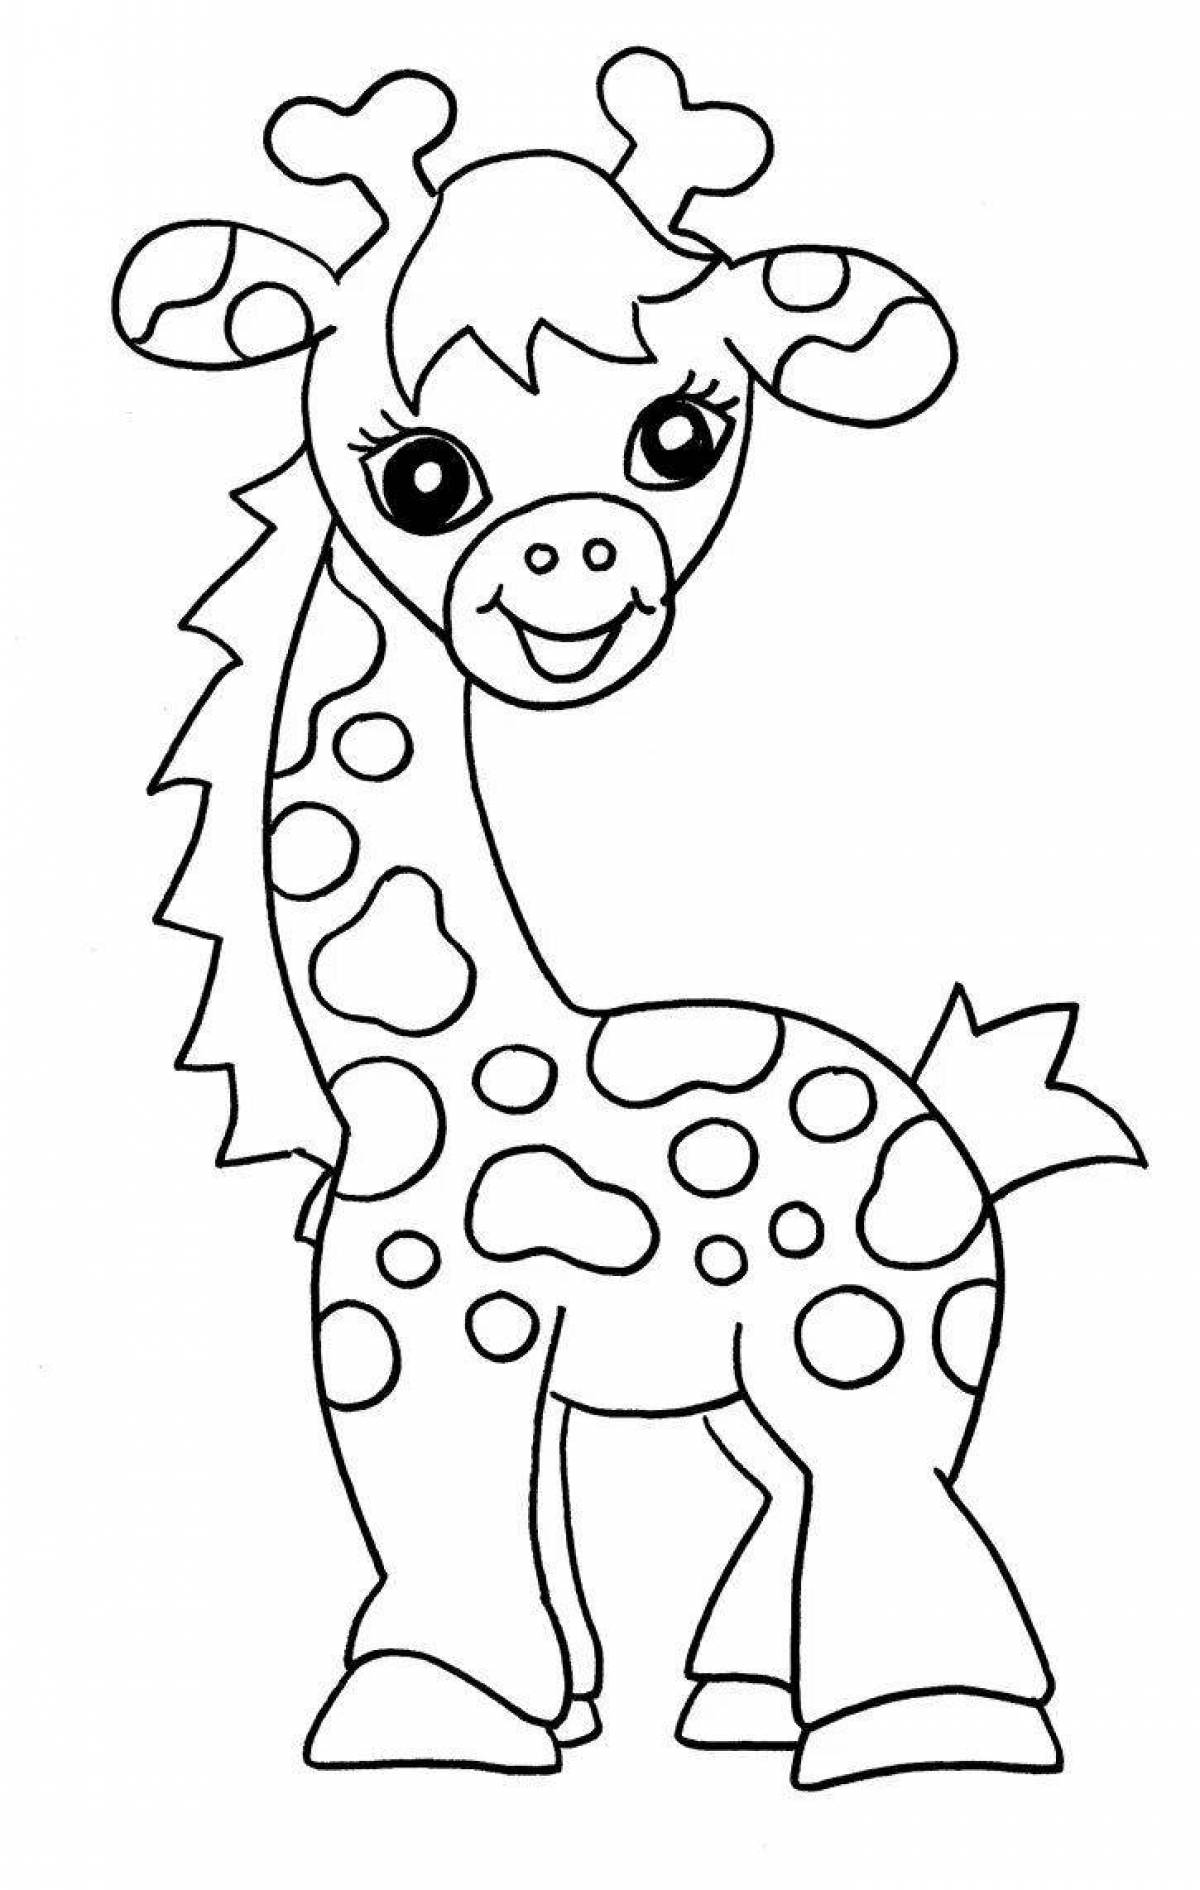 Страница раскраски жирафа для детей